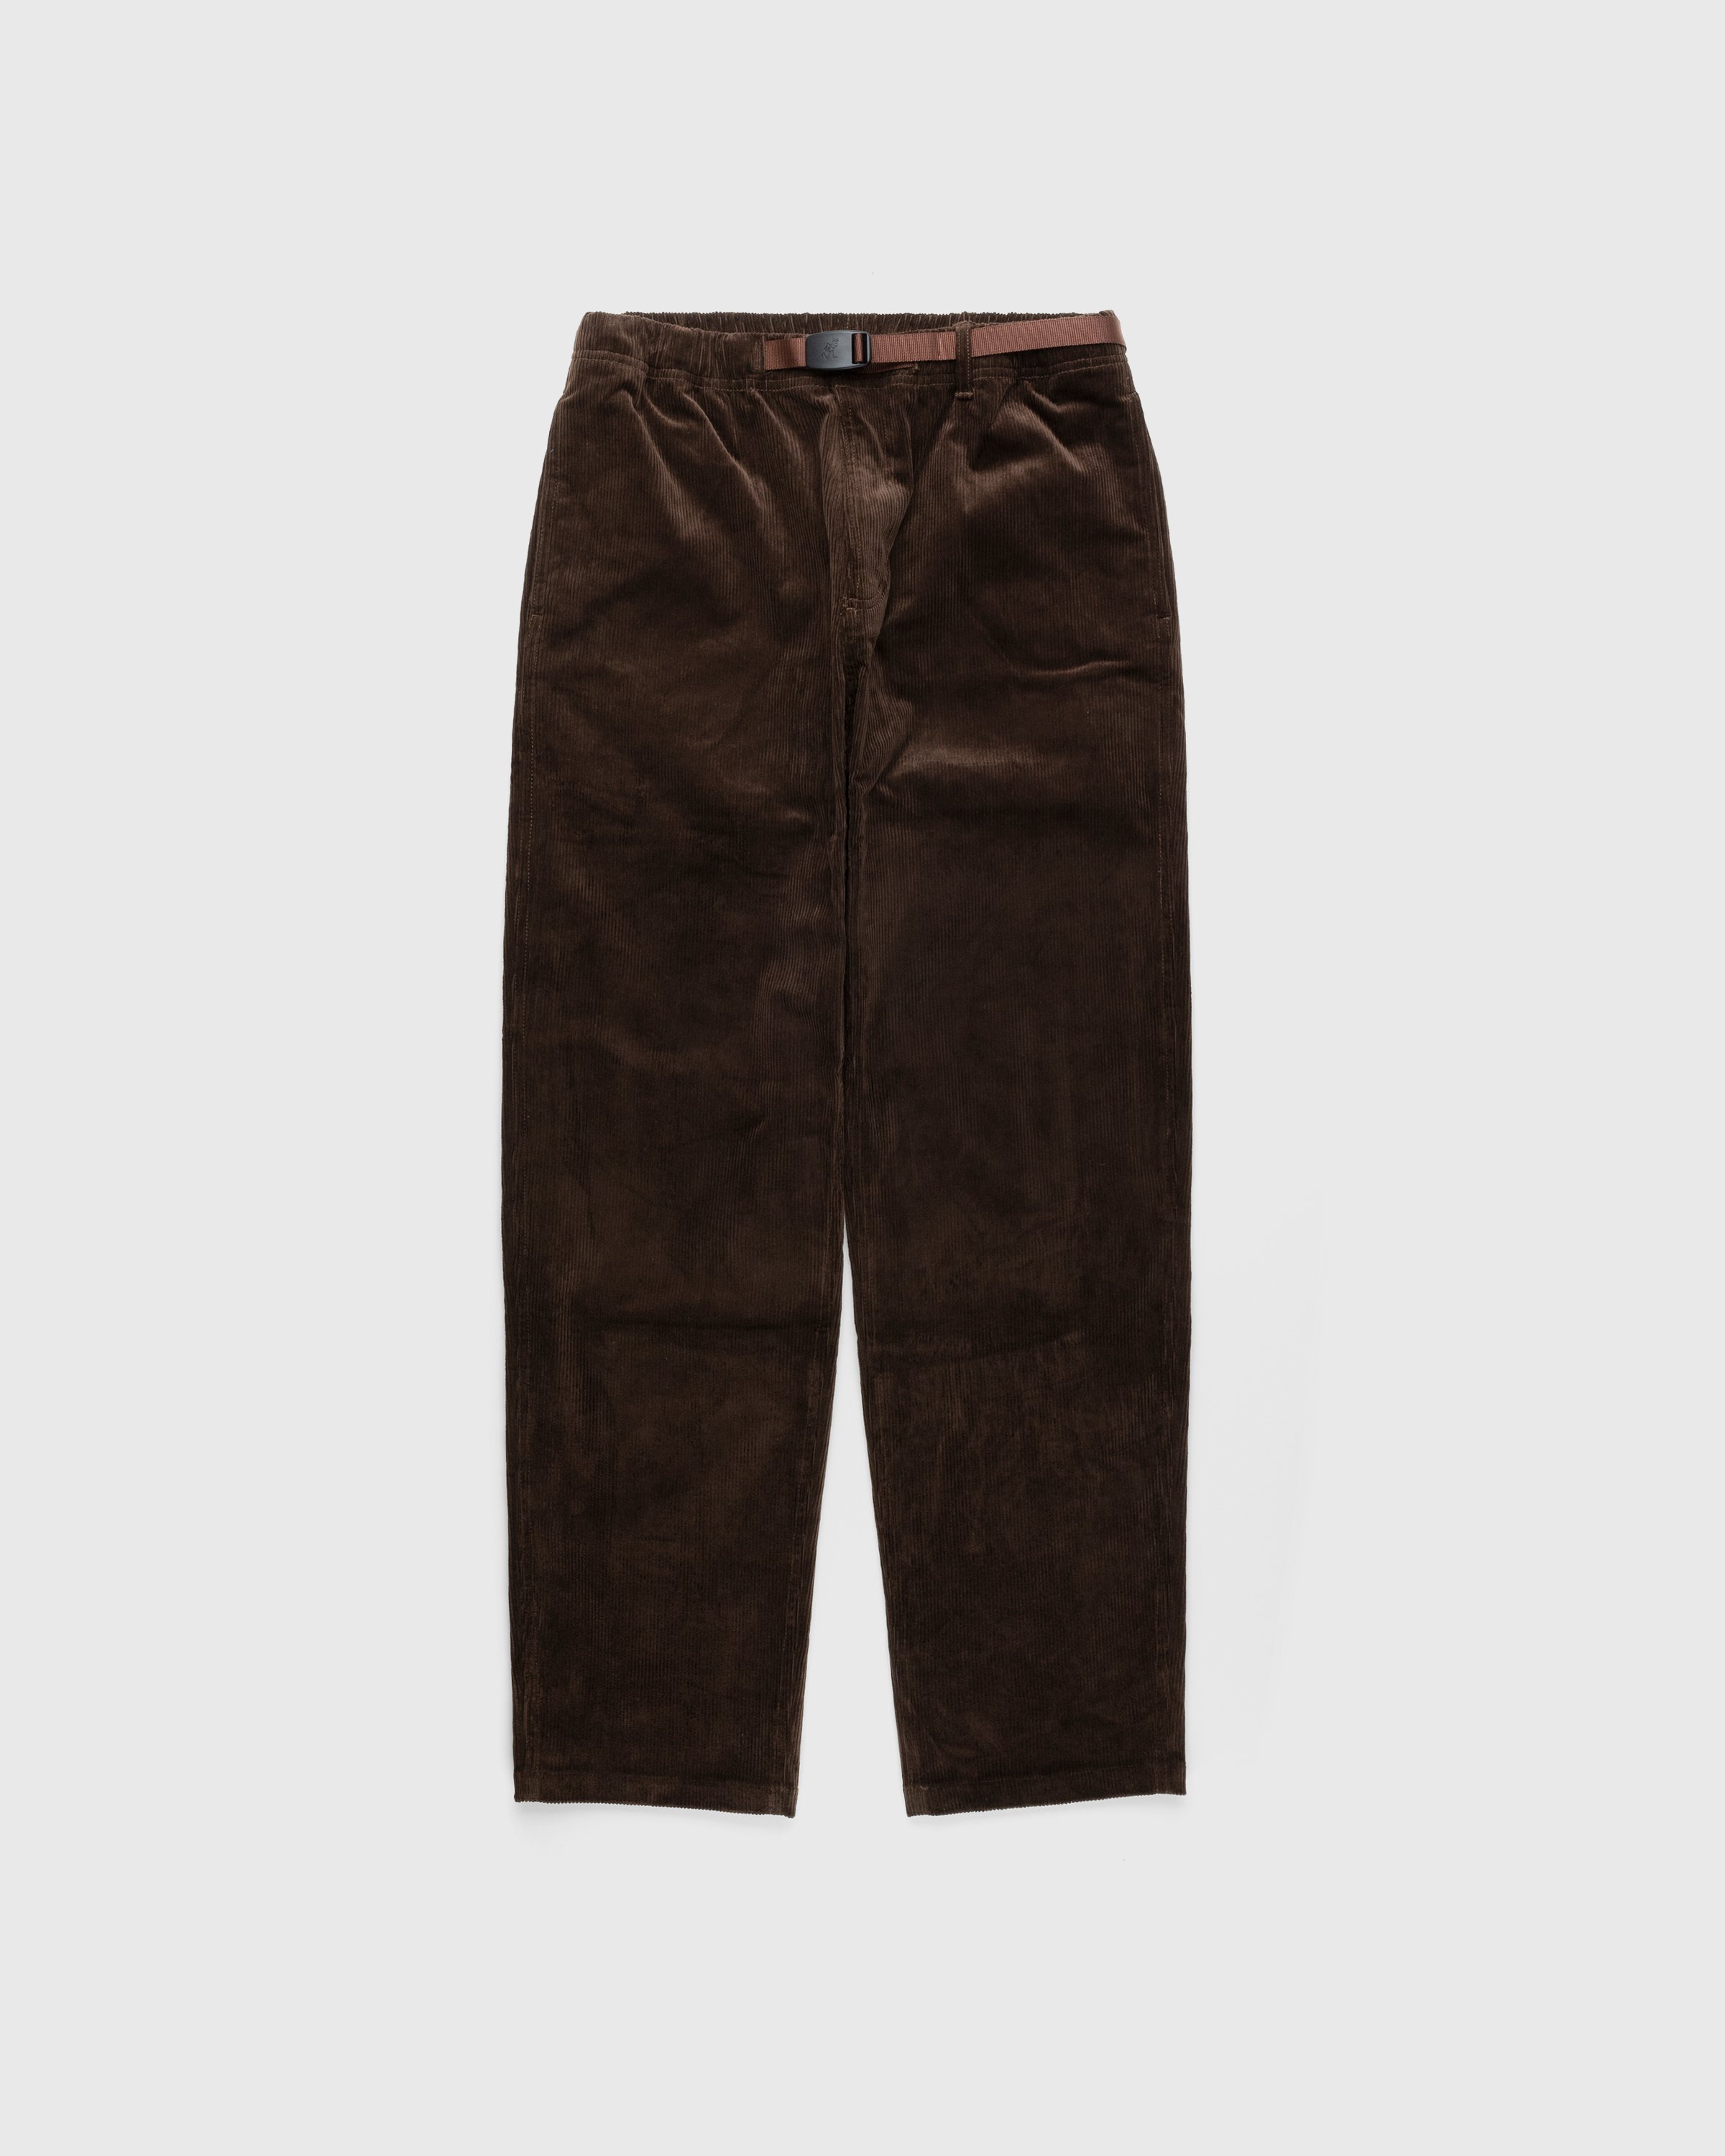 Gramicci - Corduroy Gramicci Pant Dark Brown - Clothing - Brown - Image 1